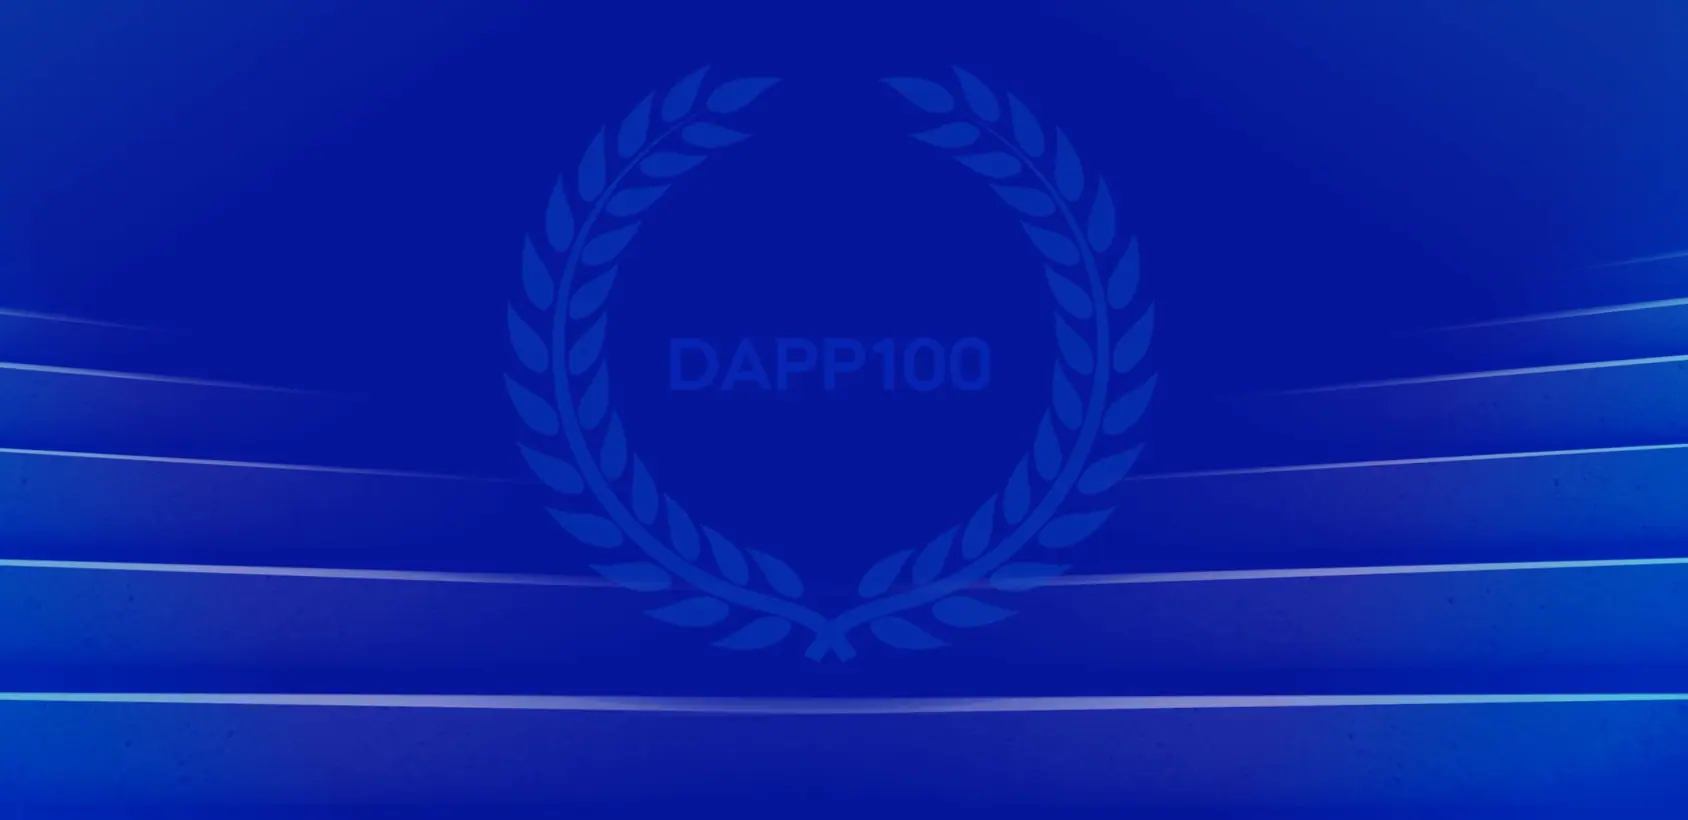 Meet six winners of the first-ever Top 100 Digital Adoption (DAP) Professionals list, DAPP100